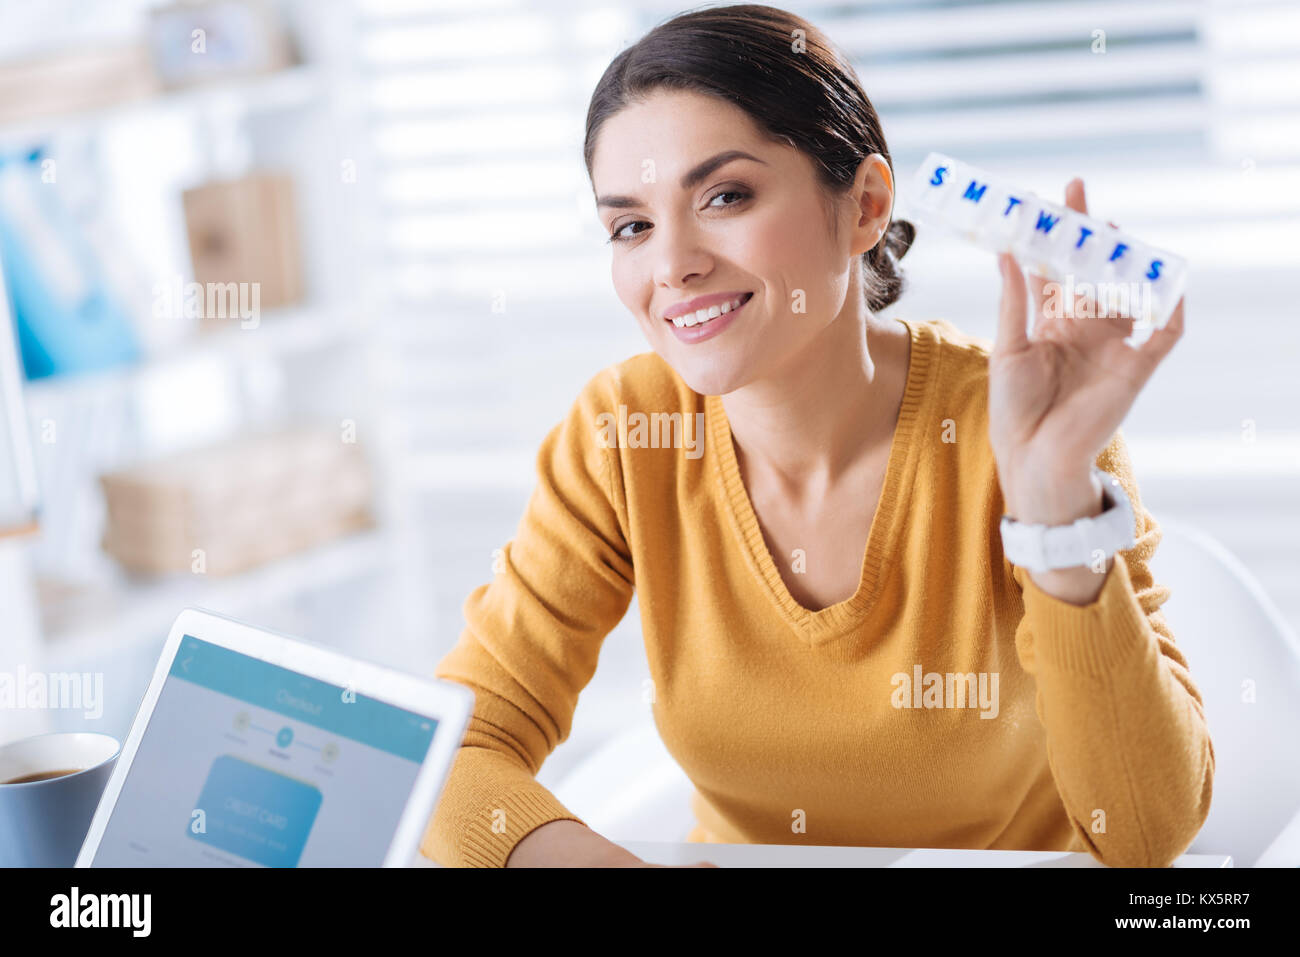 Lächelnde Frau mit einem nützlichen pillbox und das Gefühl, mich zu erholen Stockfoto